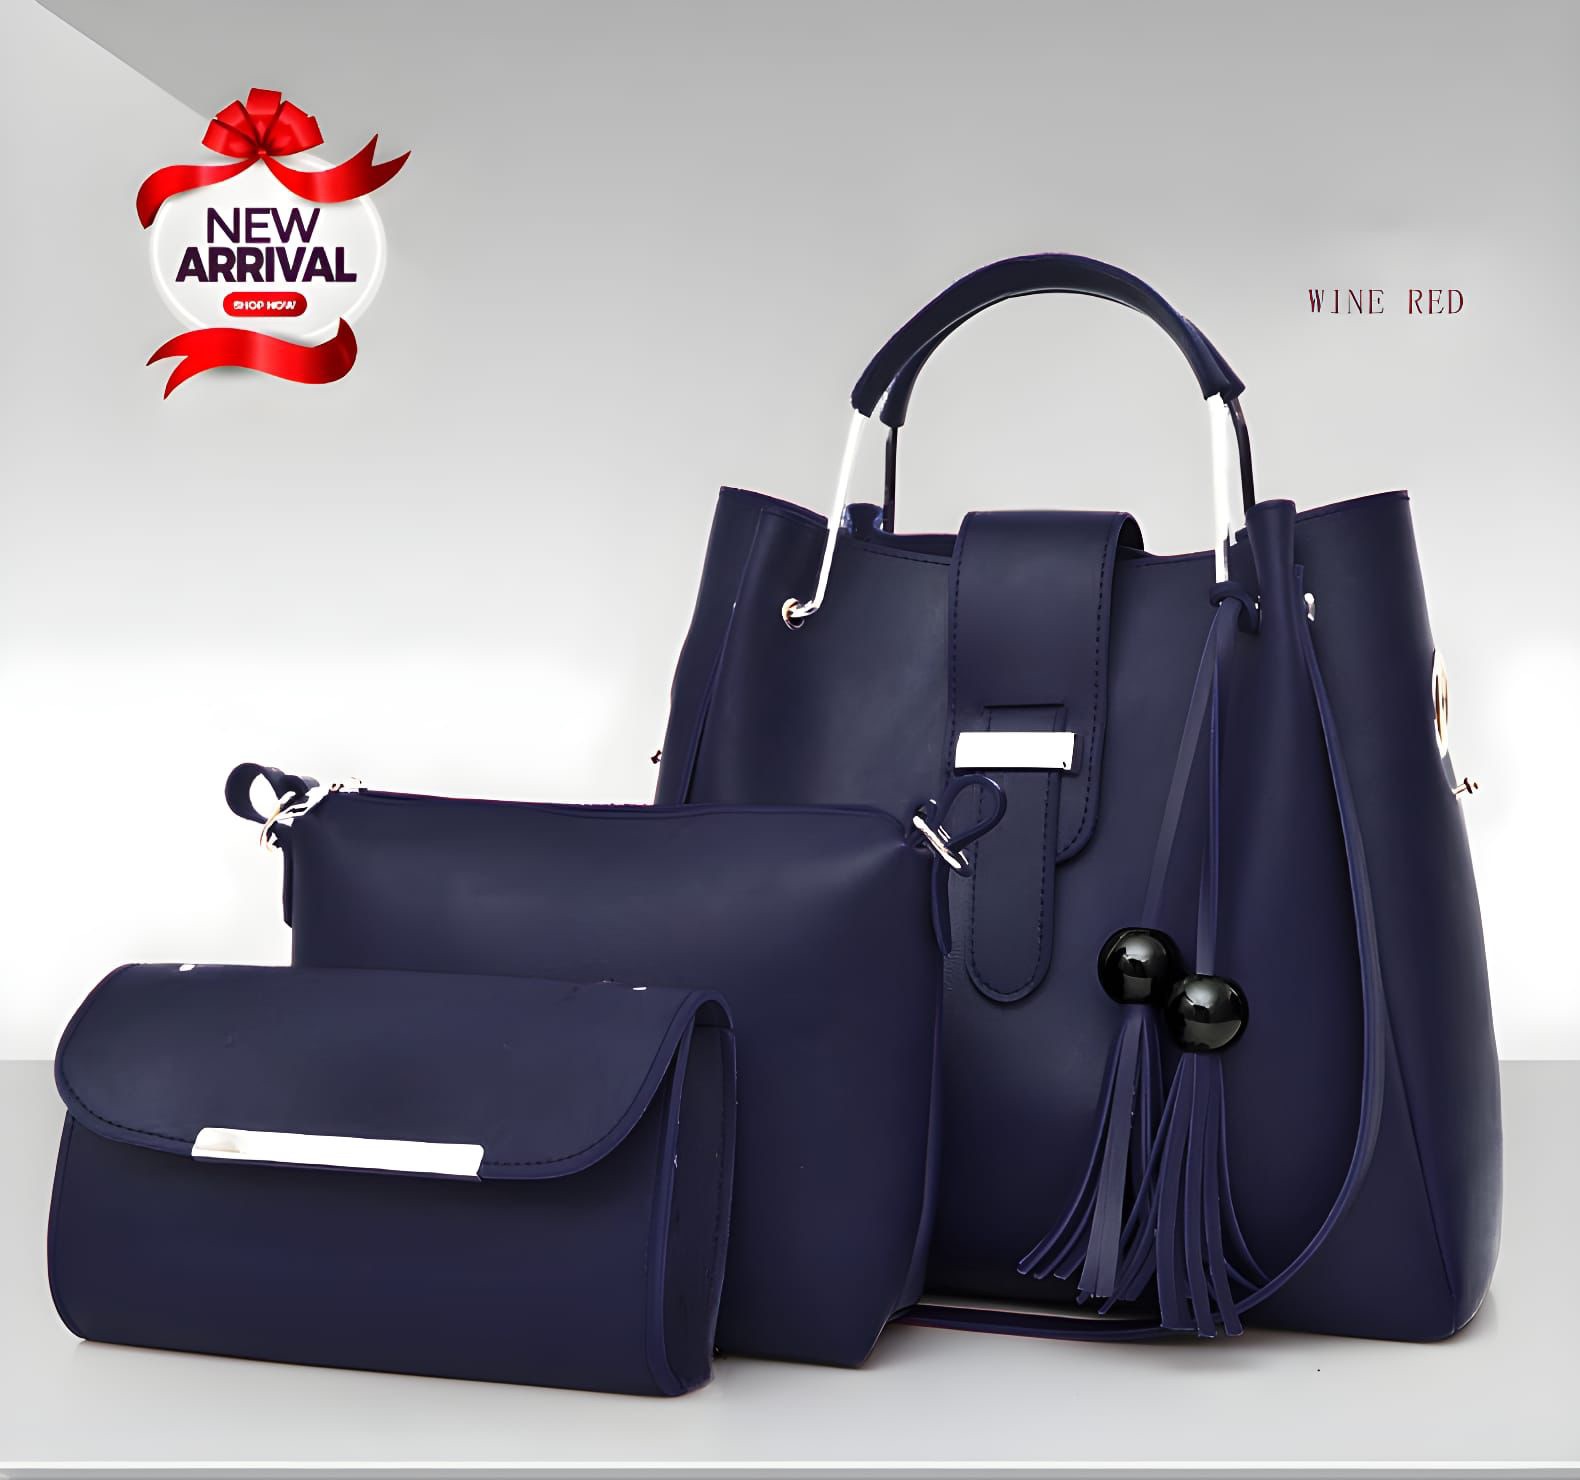 Handbags For Women: यहां मिलेंगे ऑफिस से लेकर पार्टी तक के लिए बेस्ट  ब्रांडेड बैग्स के ऑप्शन | handbags for women best branded bags for office  and party needs | HerZindagi